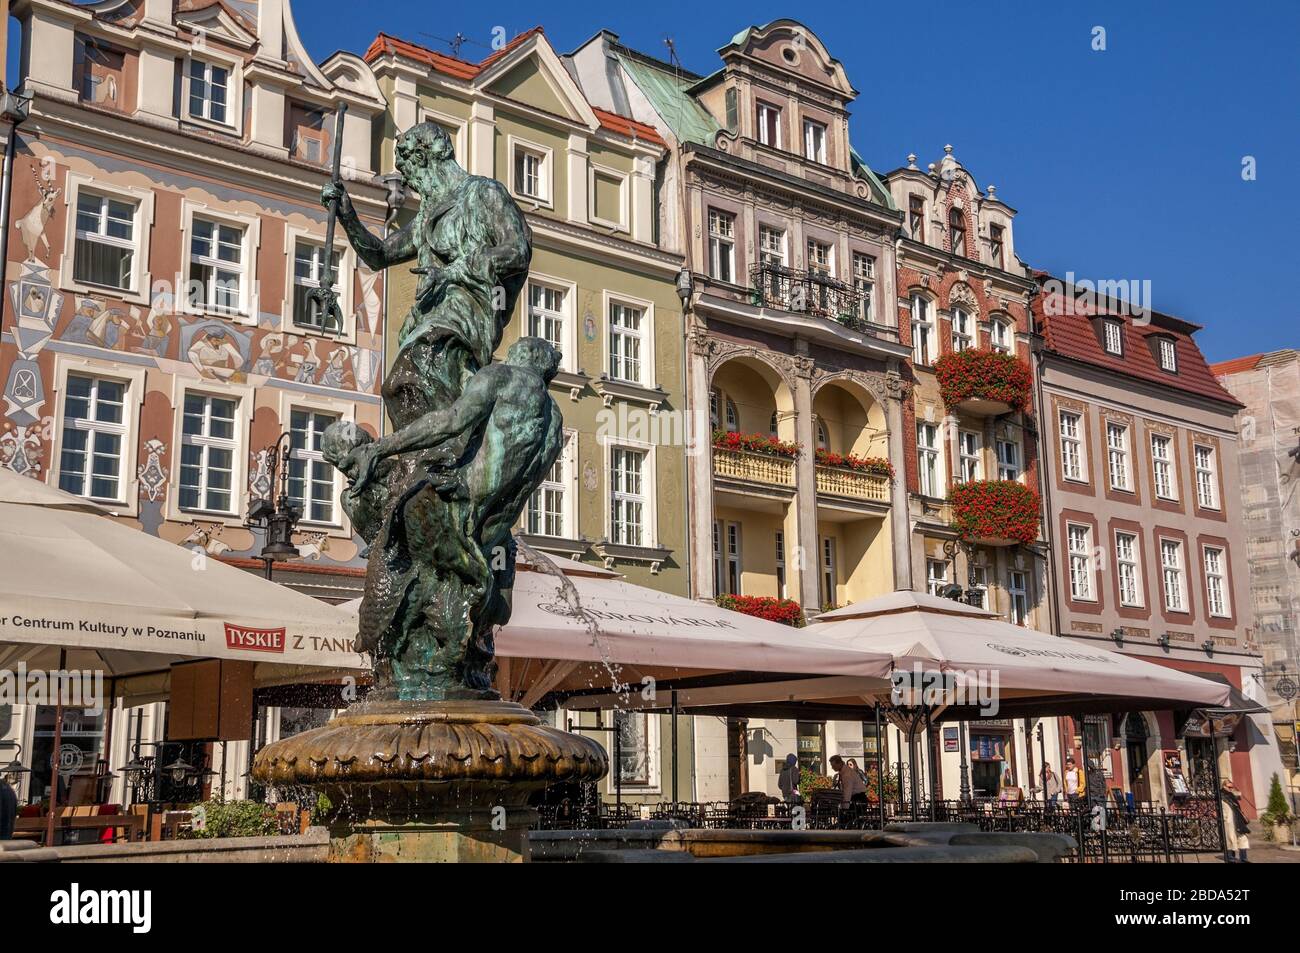 Fontaine Neptune et tenements sur le marché. Poznan, Grande Pologne Voivodeship, Pologne. Banque D'Images